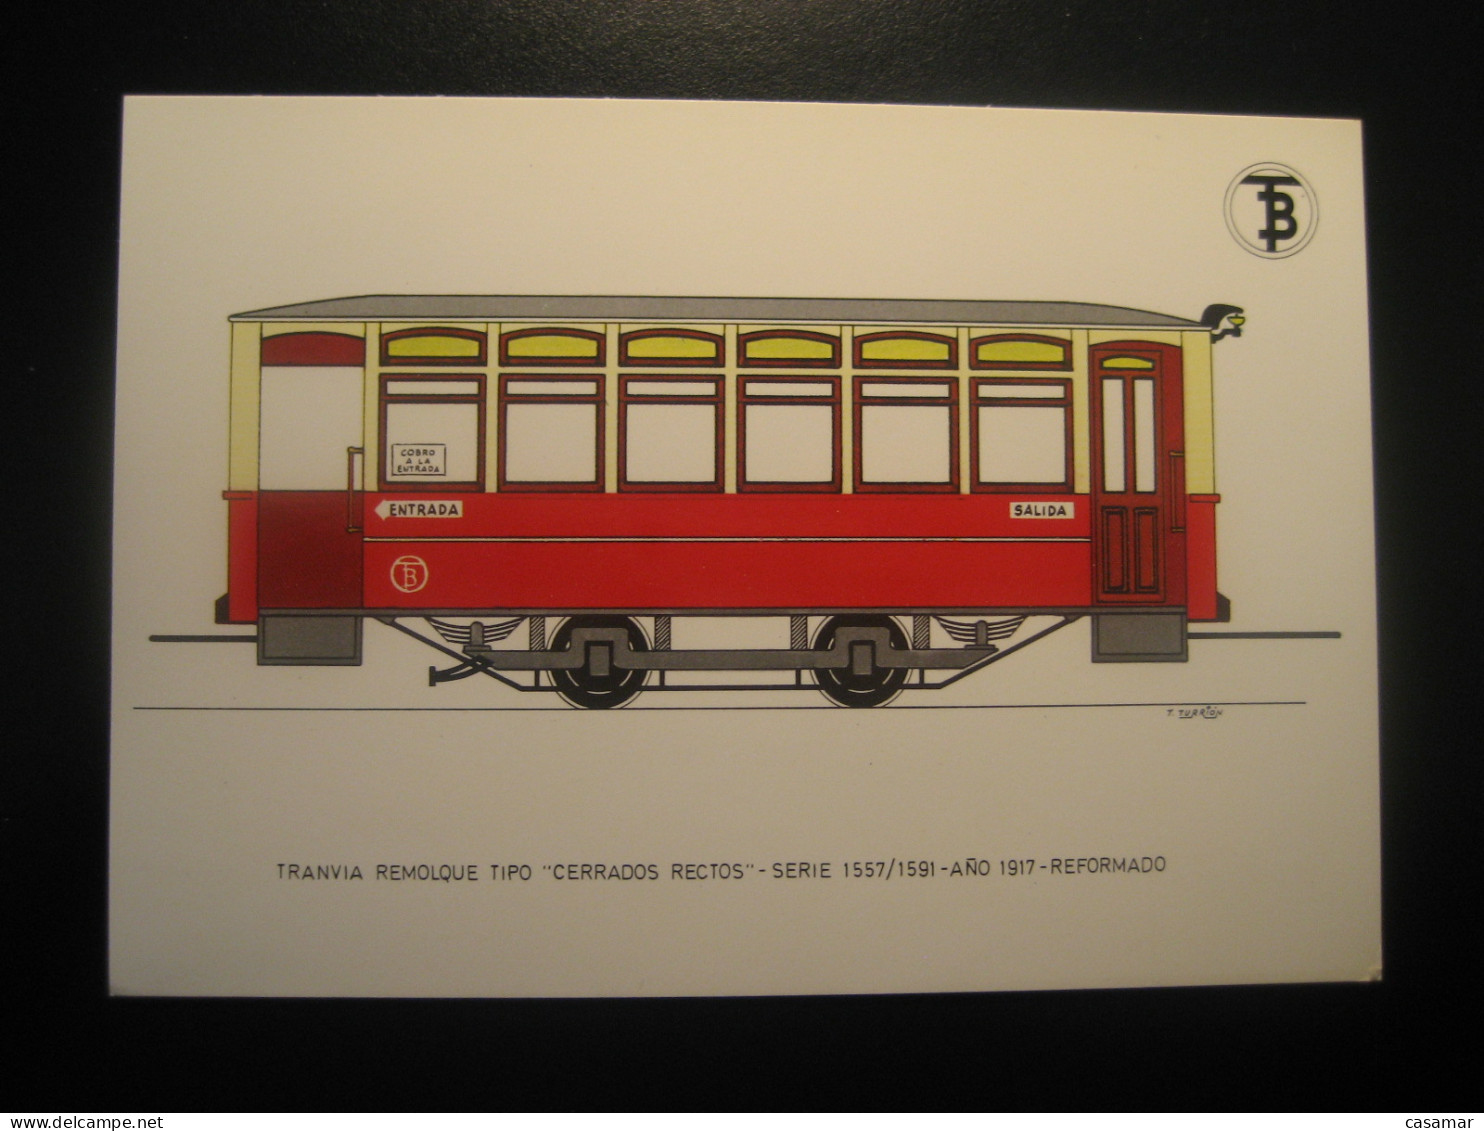 Tranvia Remolque Tipo Cerrados Rectos 1917 Tram Tramway Postcard SPAIN Barcelona TB - Tram